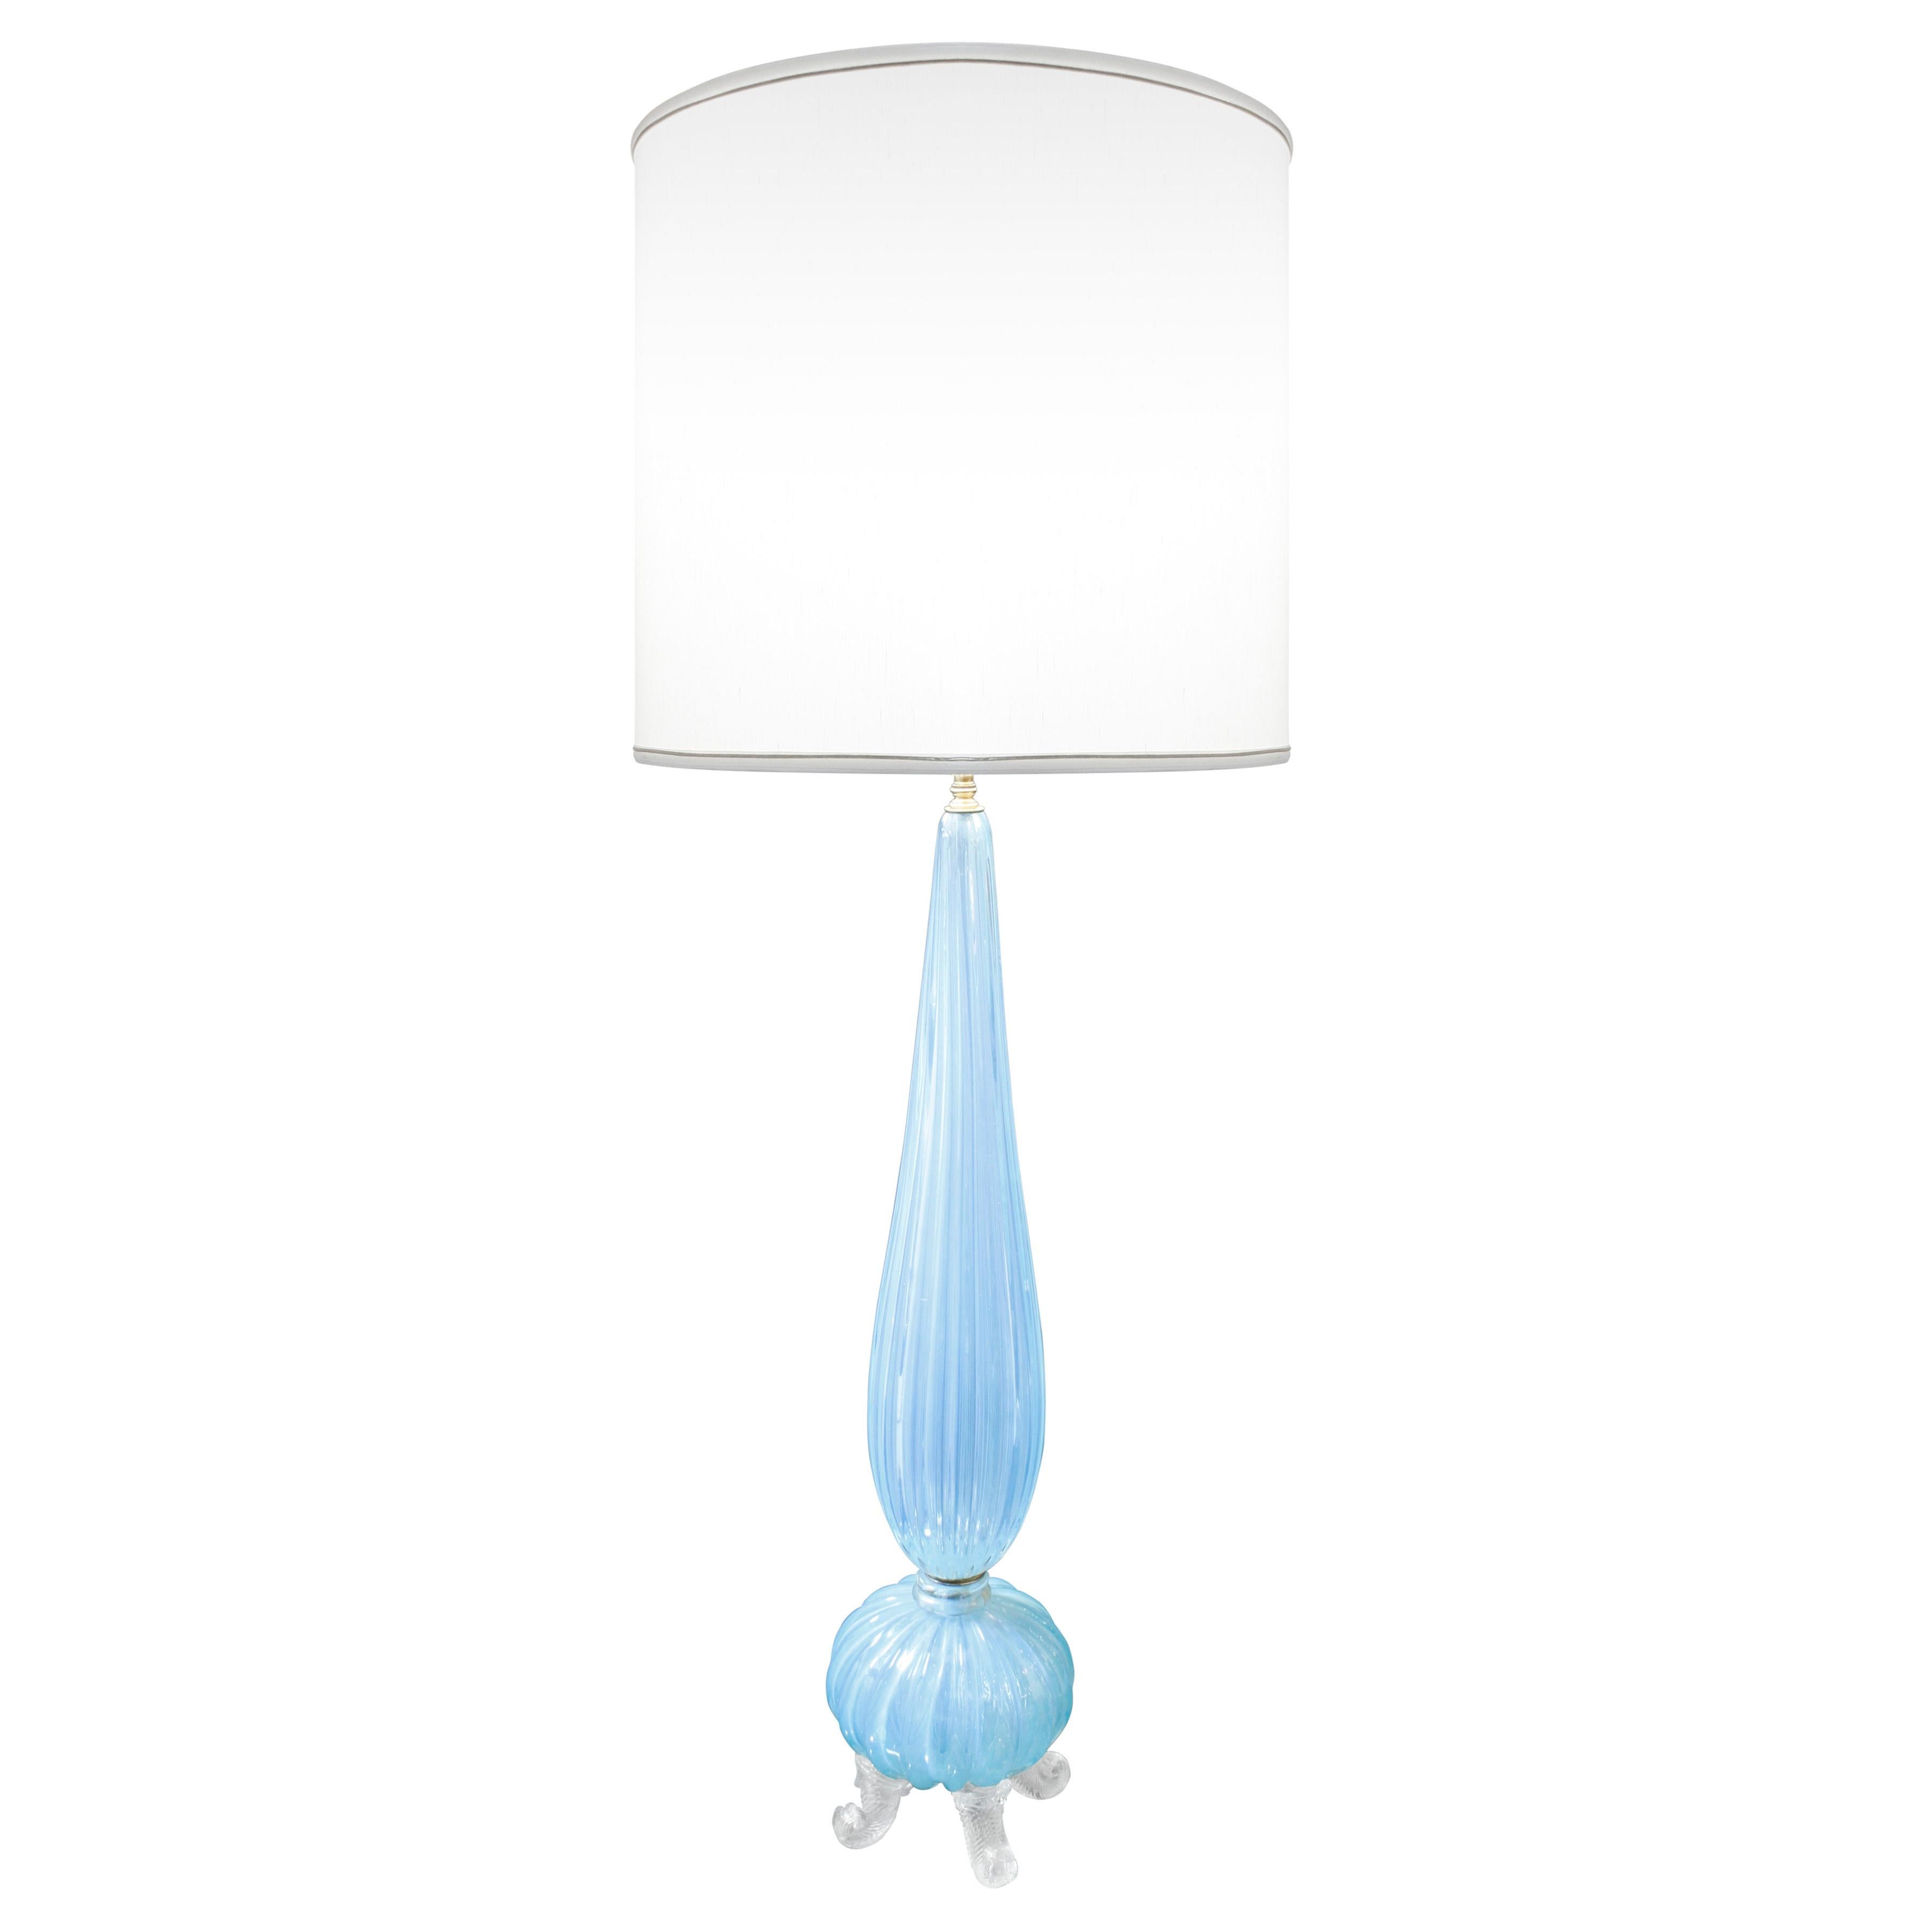 Monumentale Tischlampe aus mundgeblasenem Glas, hellblau, mit Fuß und geriffeltem Korpus, von Barovier & Toso, Murano Italien, 1950er Jahre. Der Maßstab dieser mundgeblasenen Lampe ist wirklich beeindruckend.  Das gilt auch für die